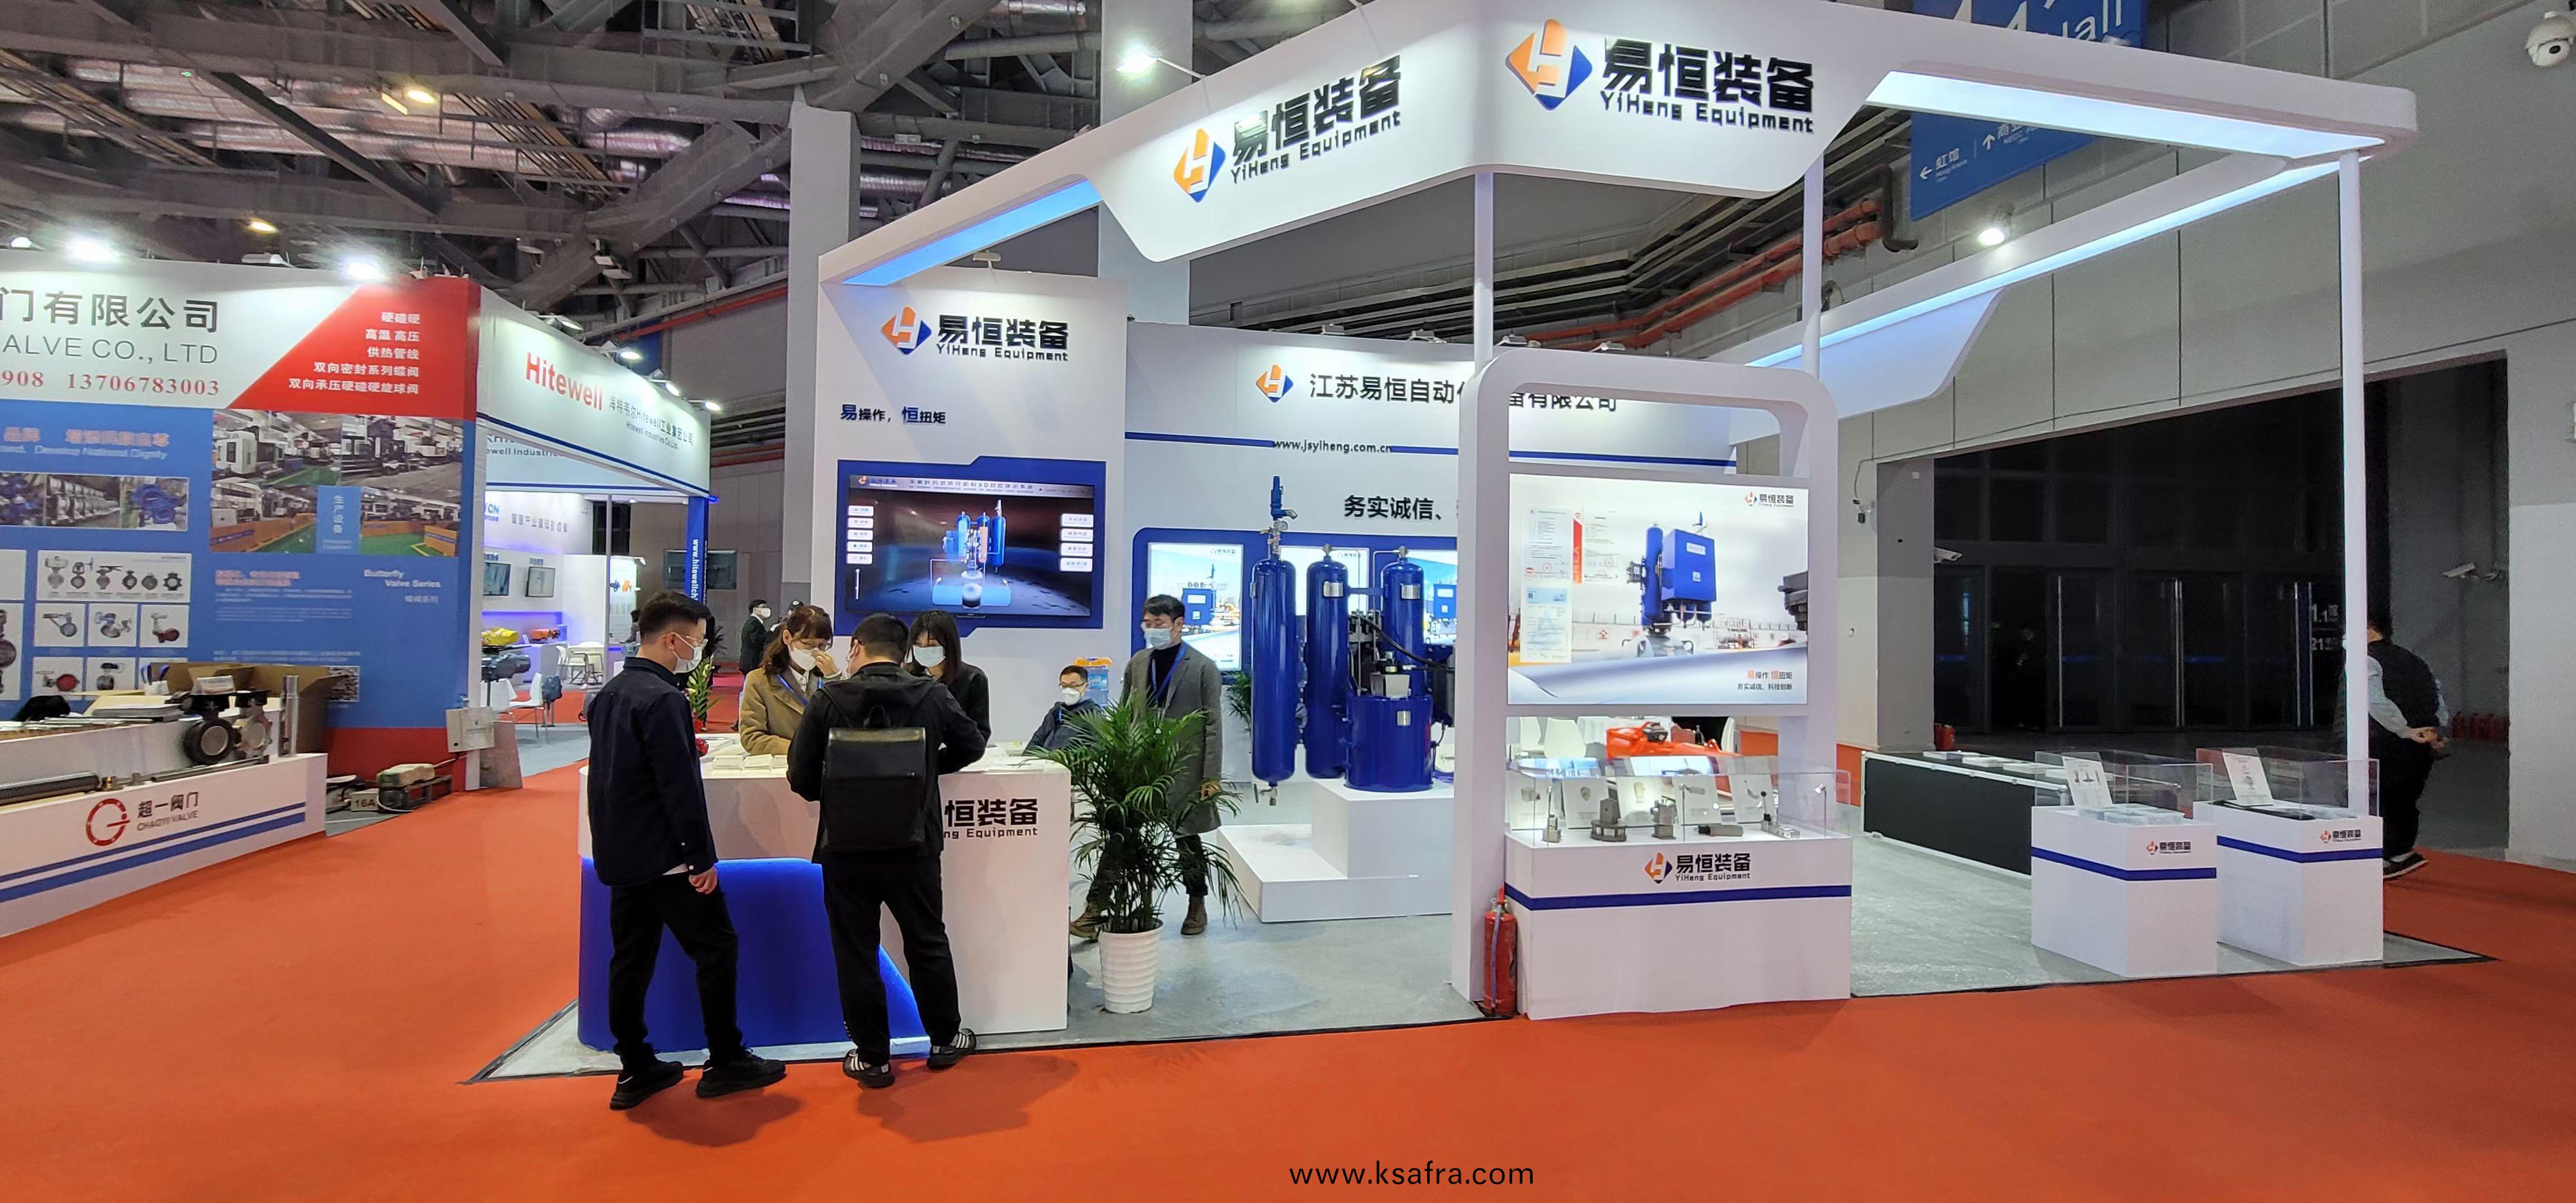 中国第十一届(上海)国际流体机械展览会